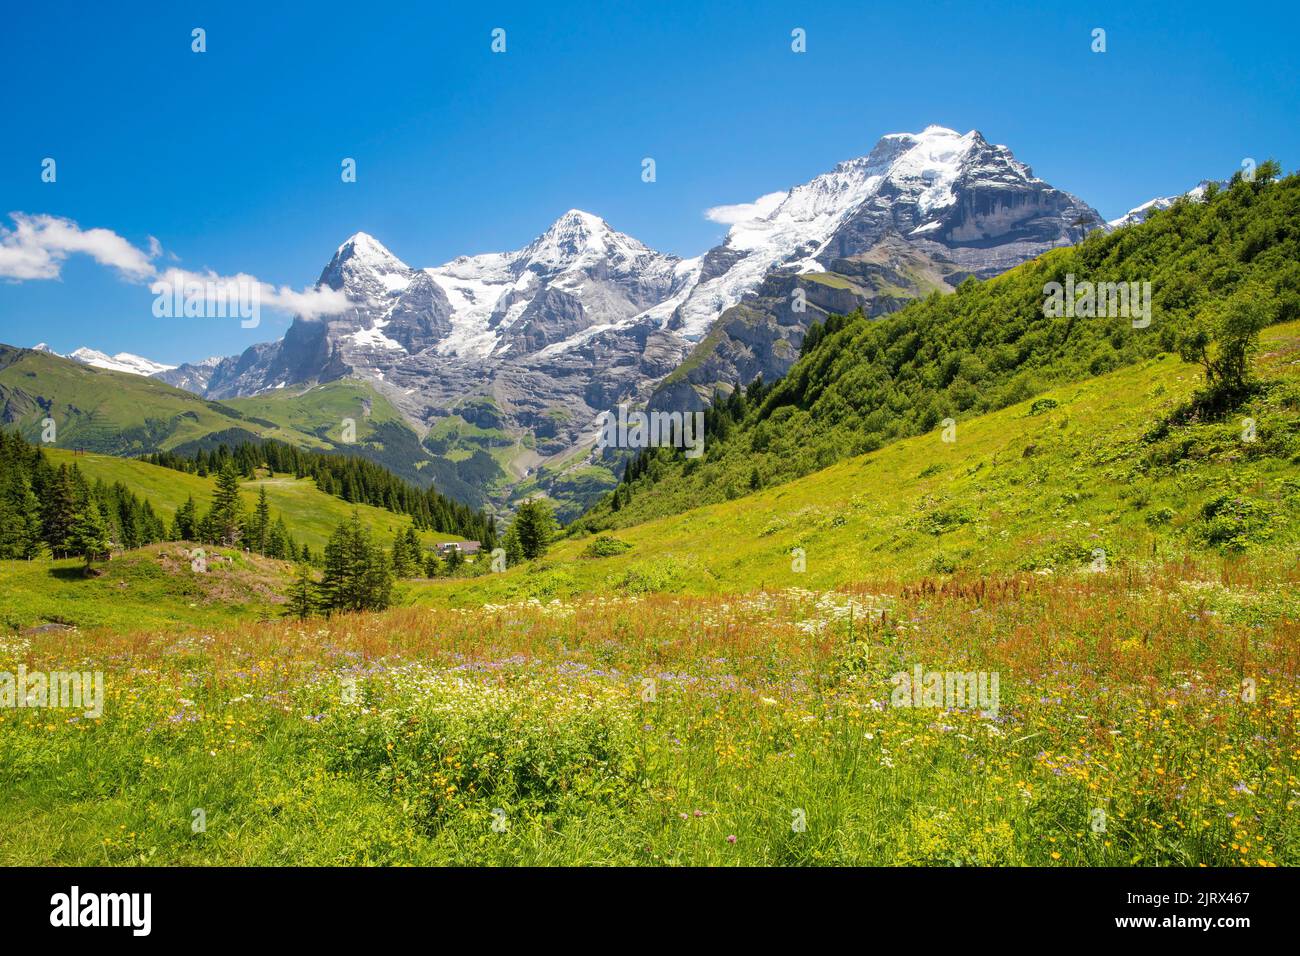 Il panorama delle alpi Bernesi con le cime di Jungfrau, Monch e Eiger. Foto Stock